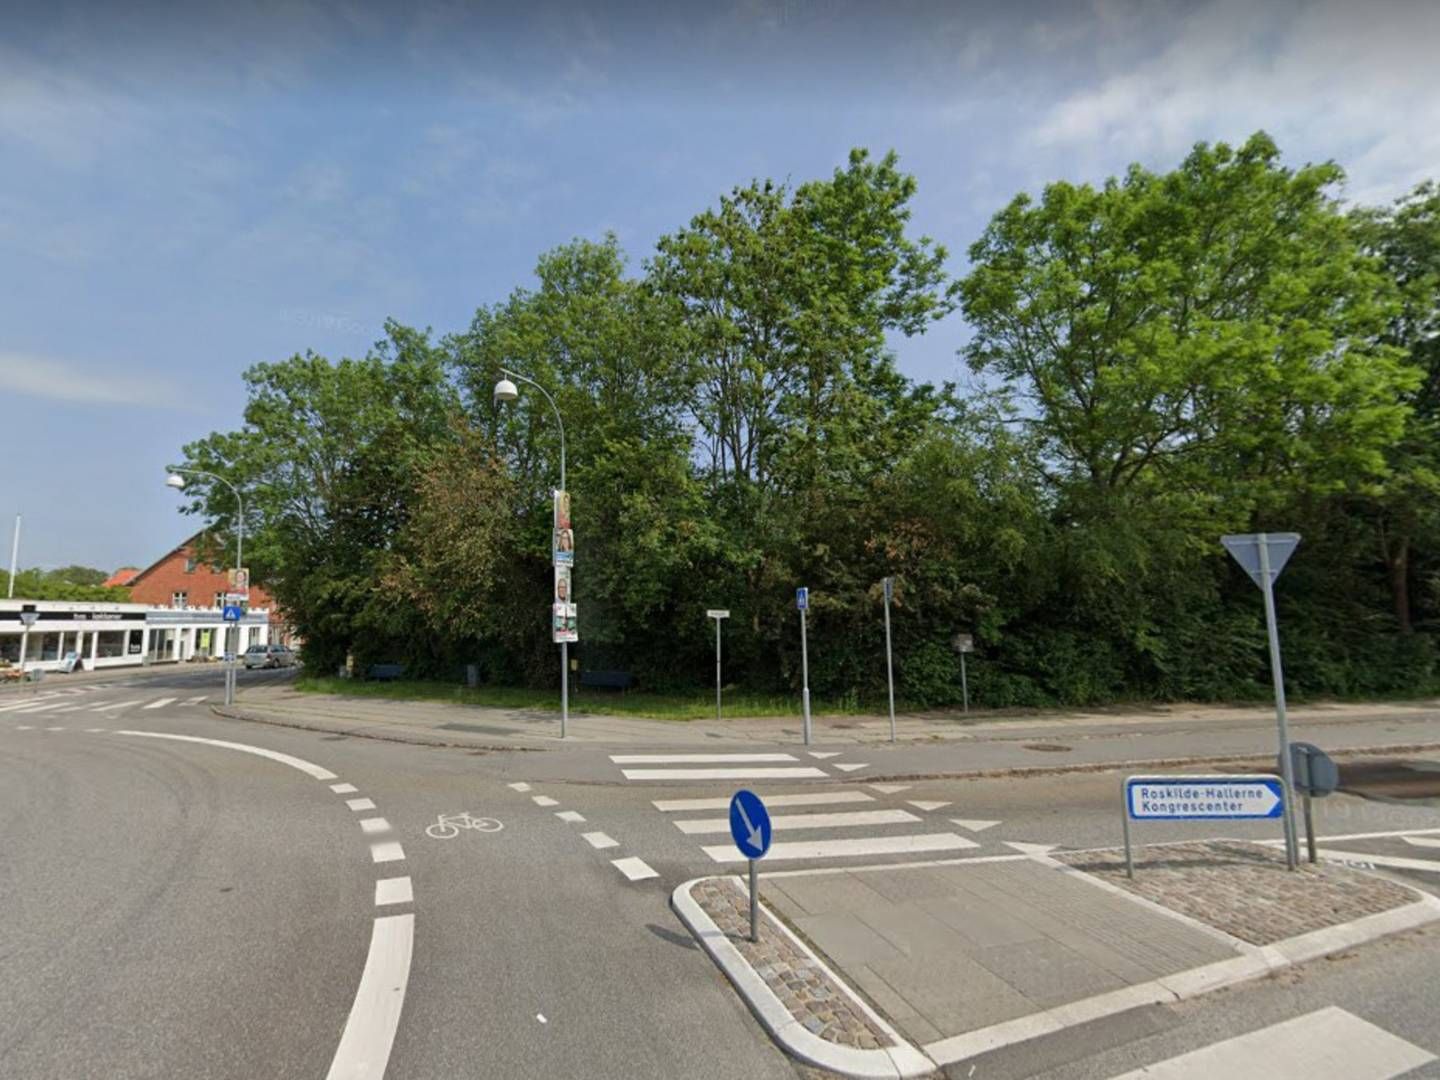 Boligerne skal opføres ved rundkørslen mellem Helligkorsvej og Møllehusvej i Roskilde. | Foto: Google Maps